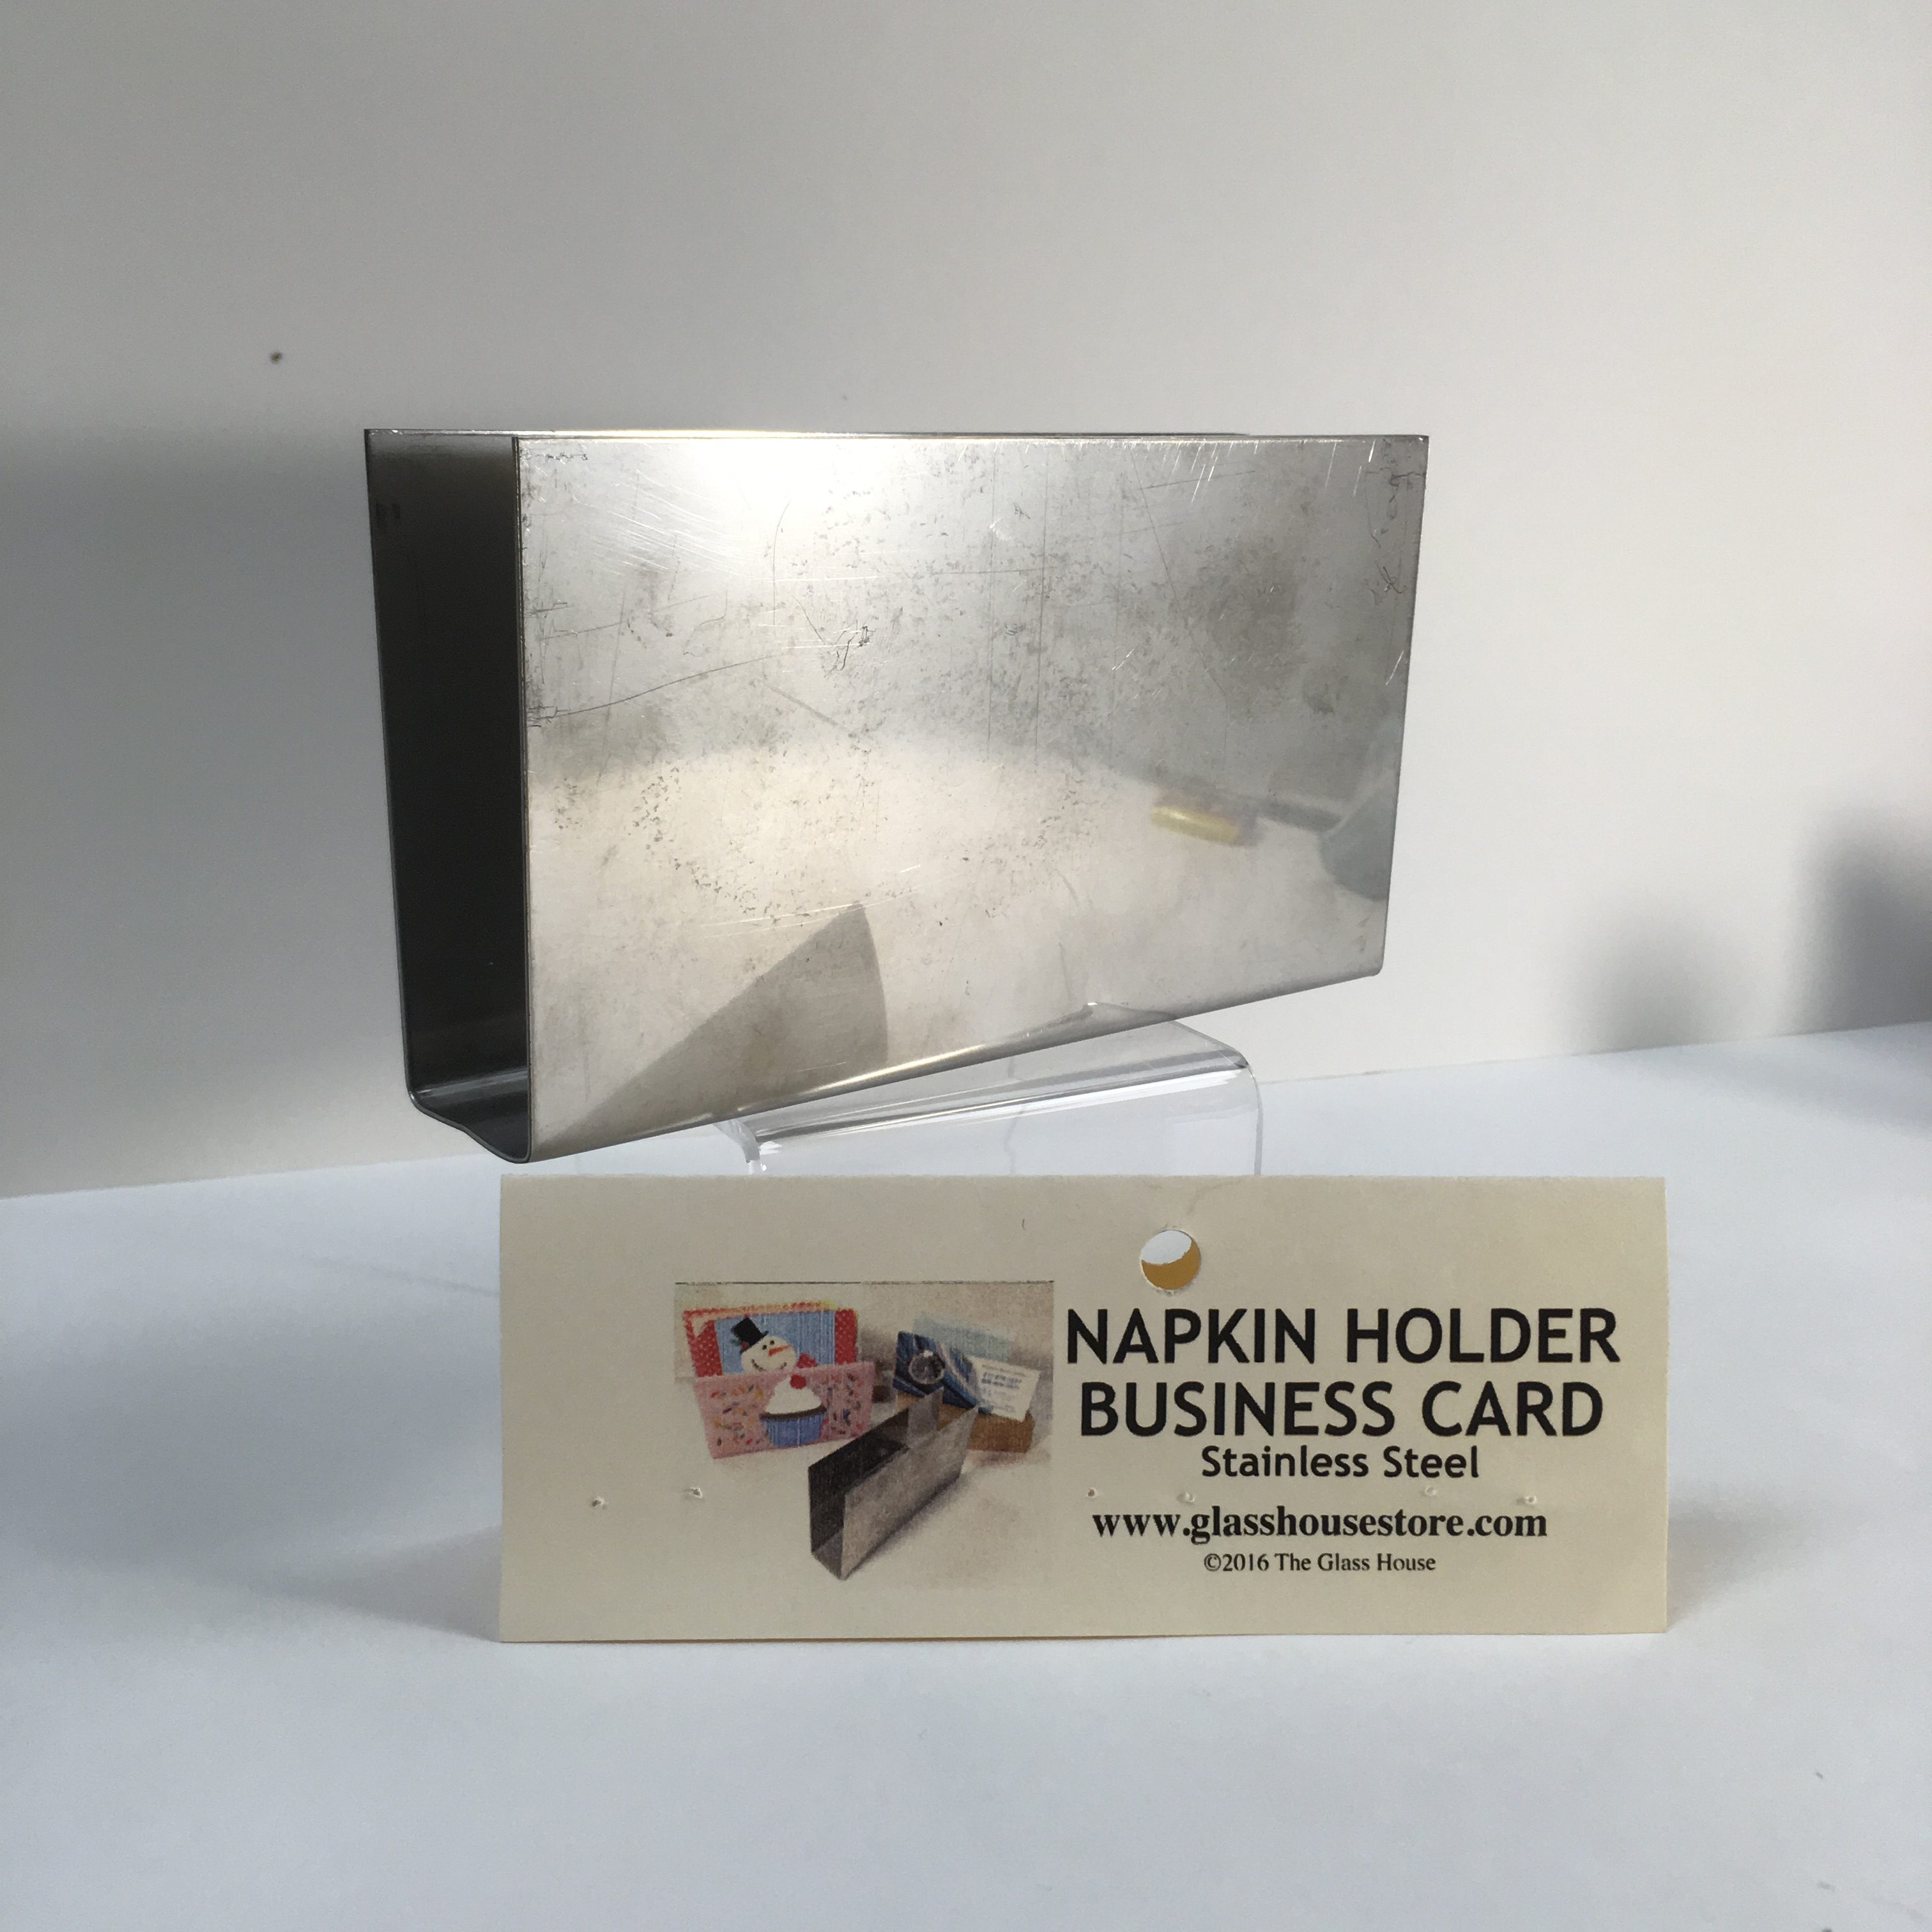 https://www.glasshousestore.com/wp-content/uploads/2016/10/napkin-holder-stainless-steel-mold.jpeg